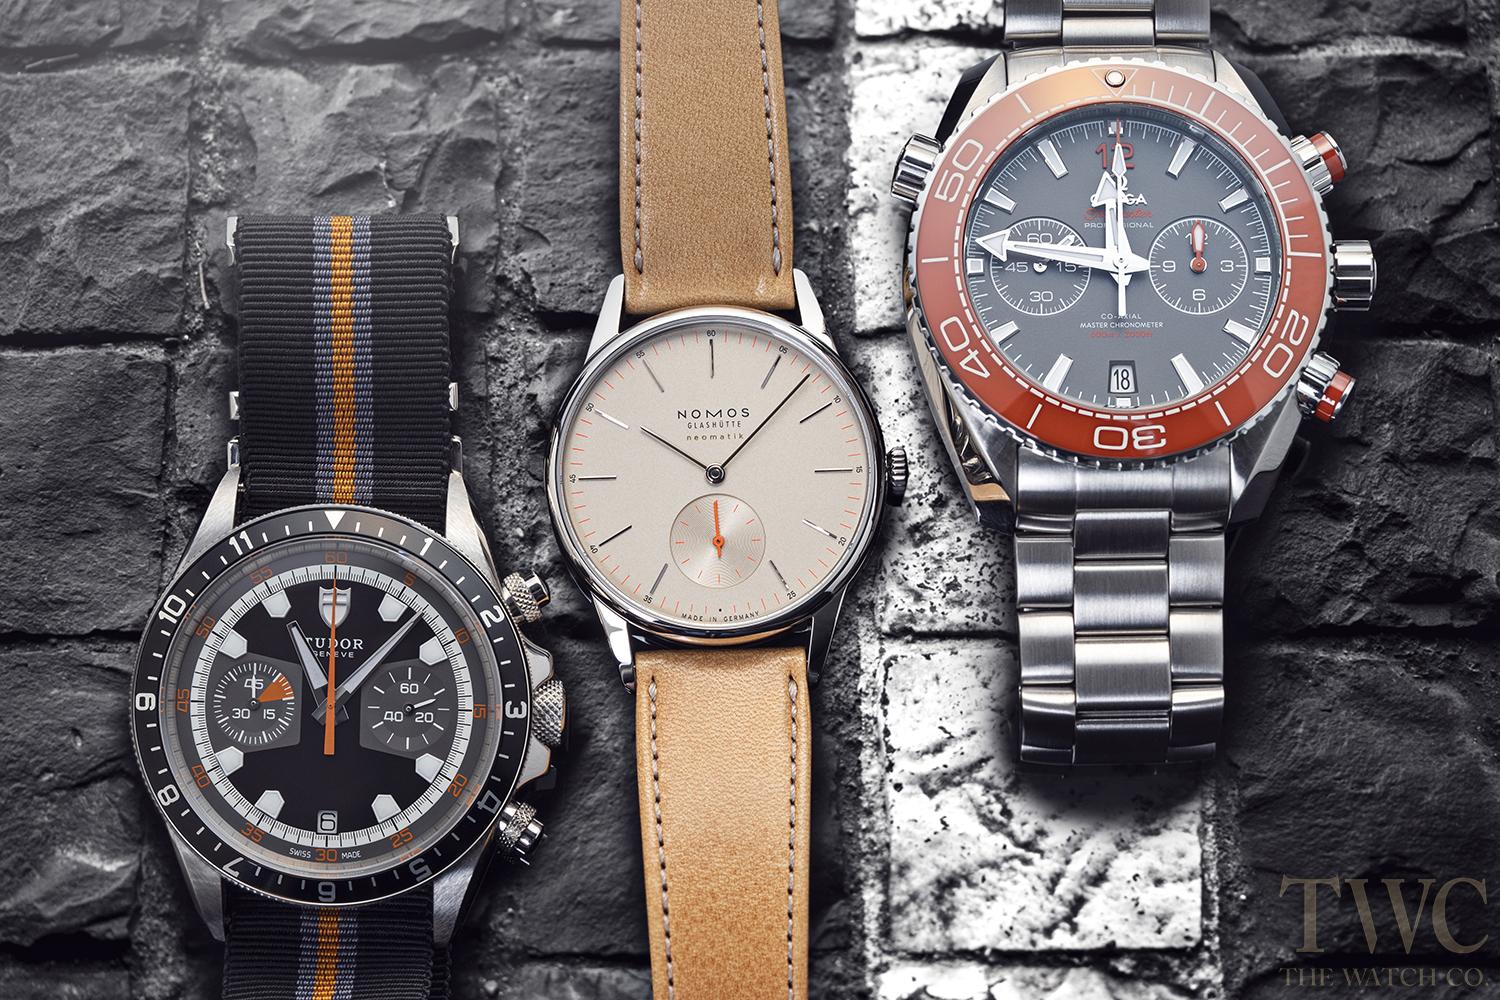 ベルトによって変わる使い心地 腕時計のベルトを素材別に解説 The Watch Company